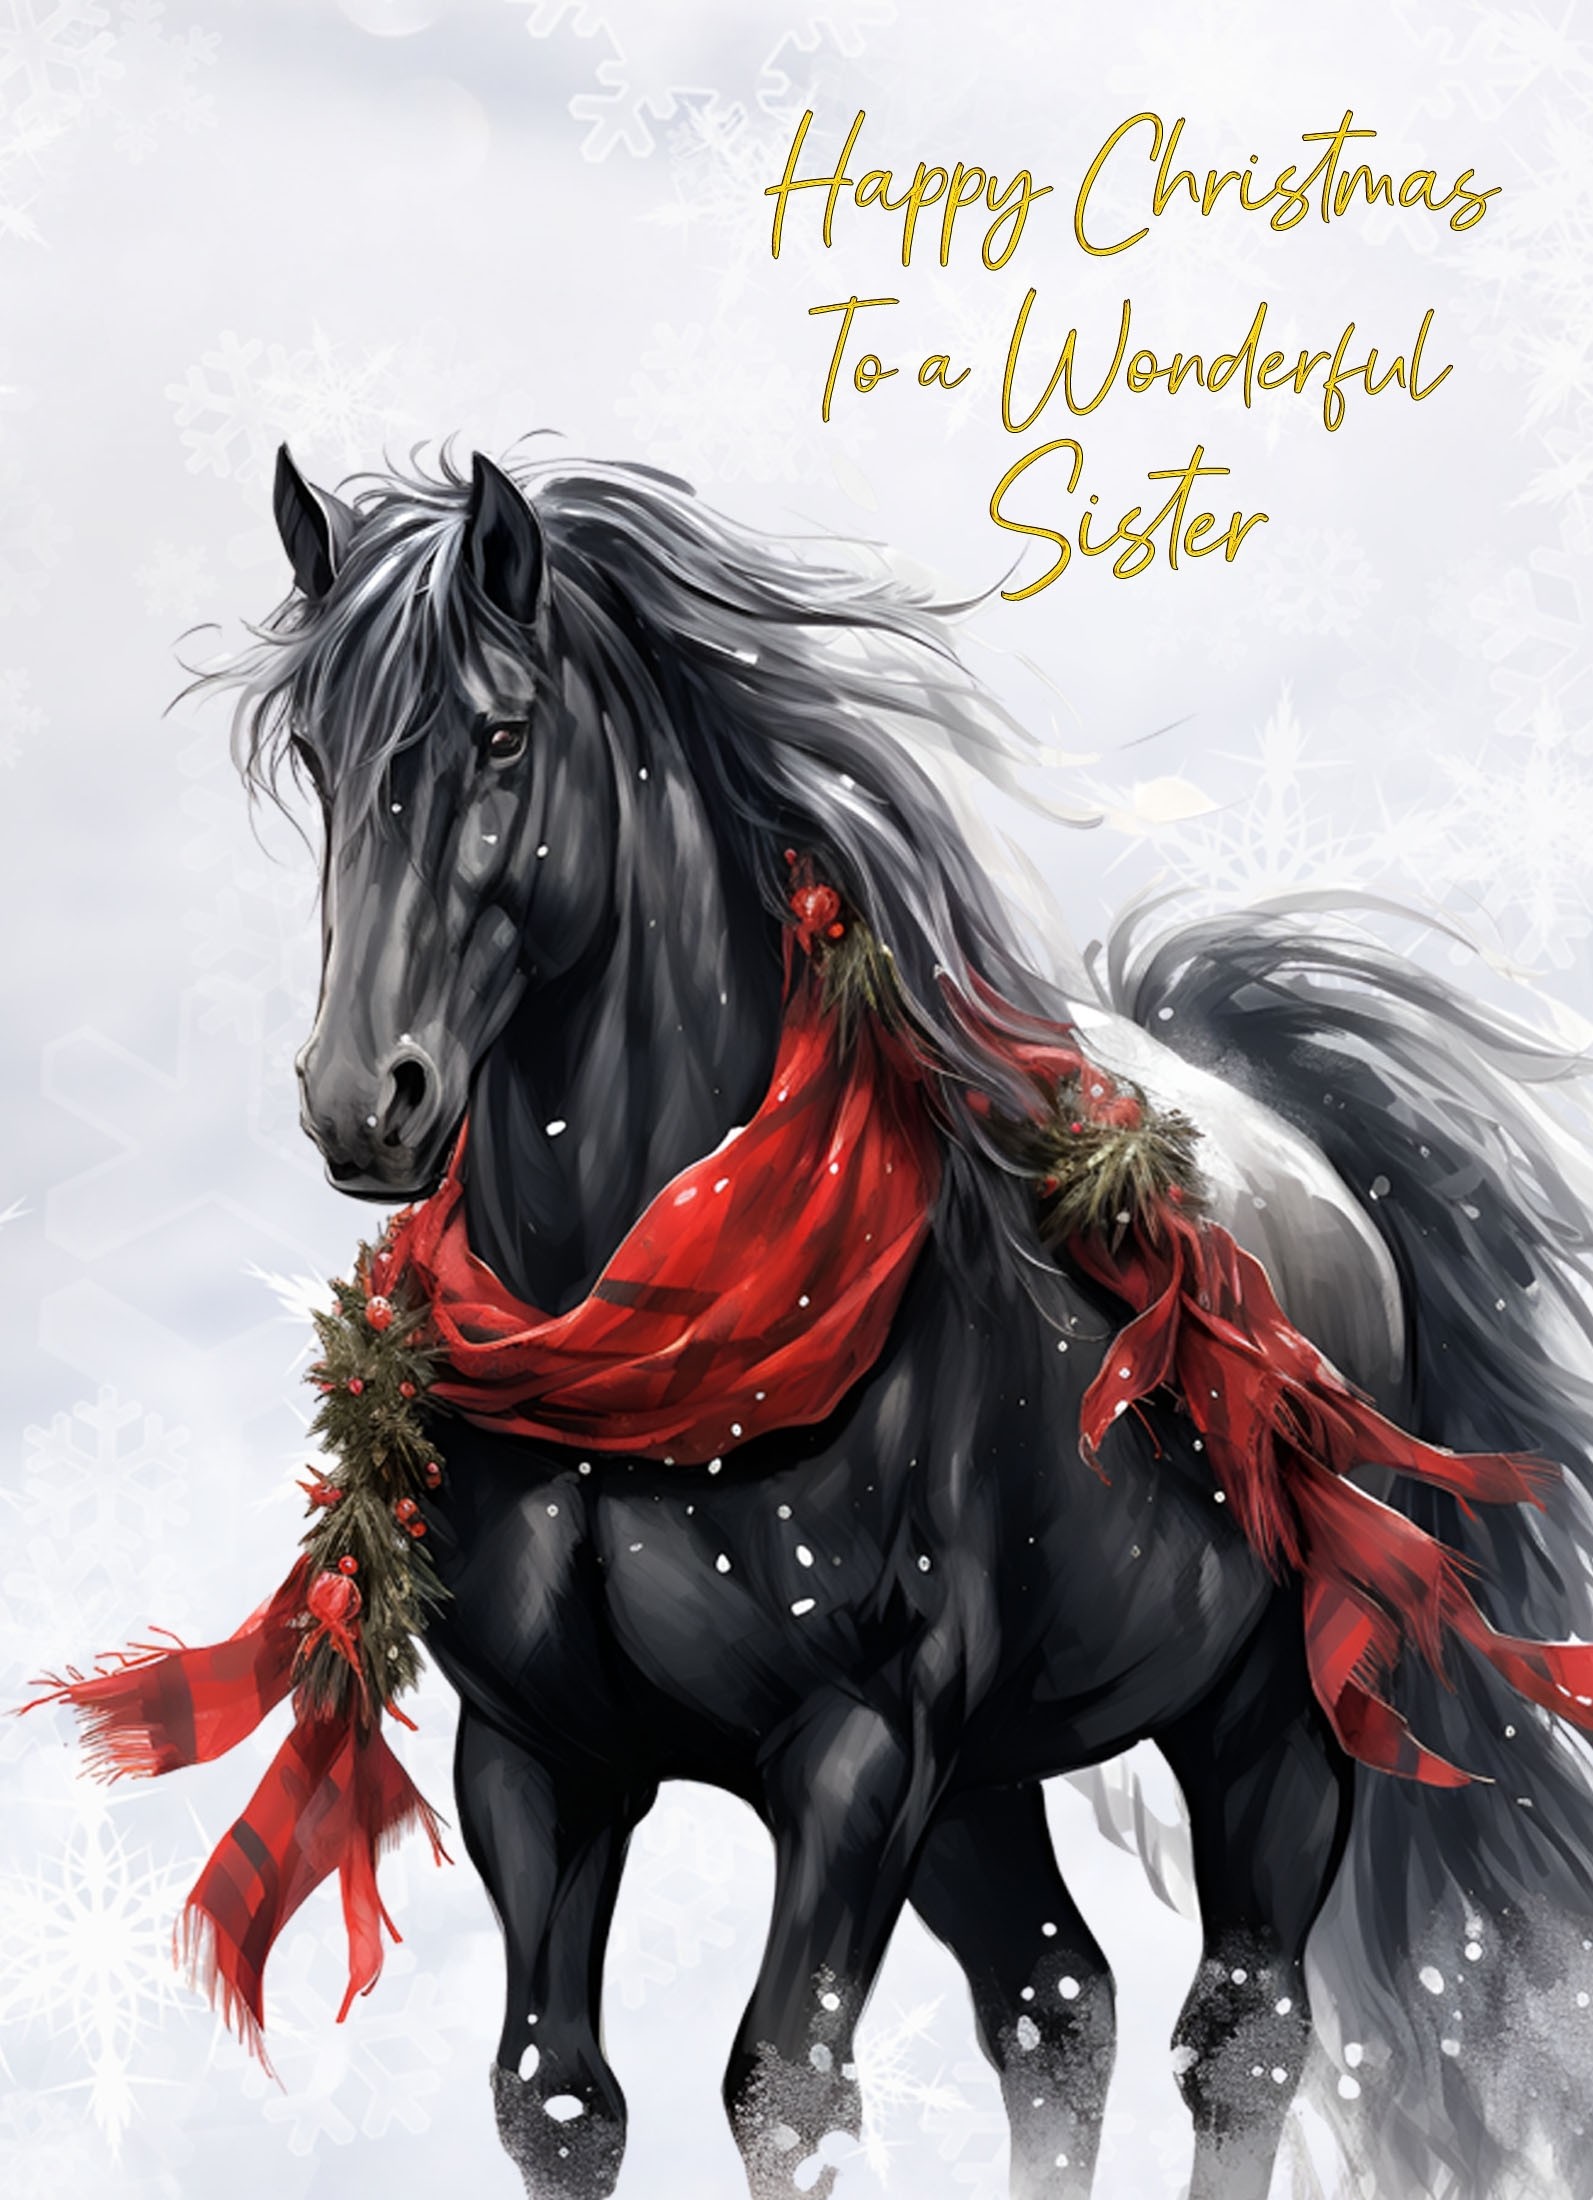 Christmas Card For Sister (Horse Art Black)